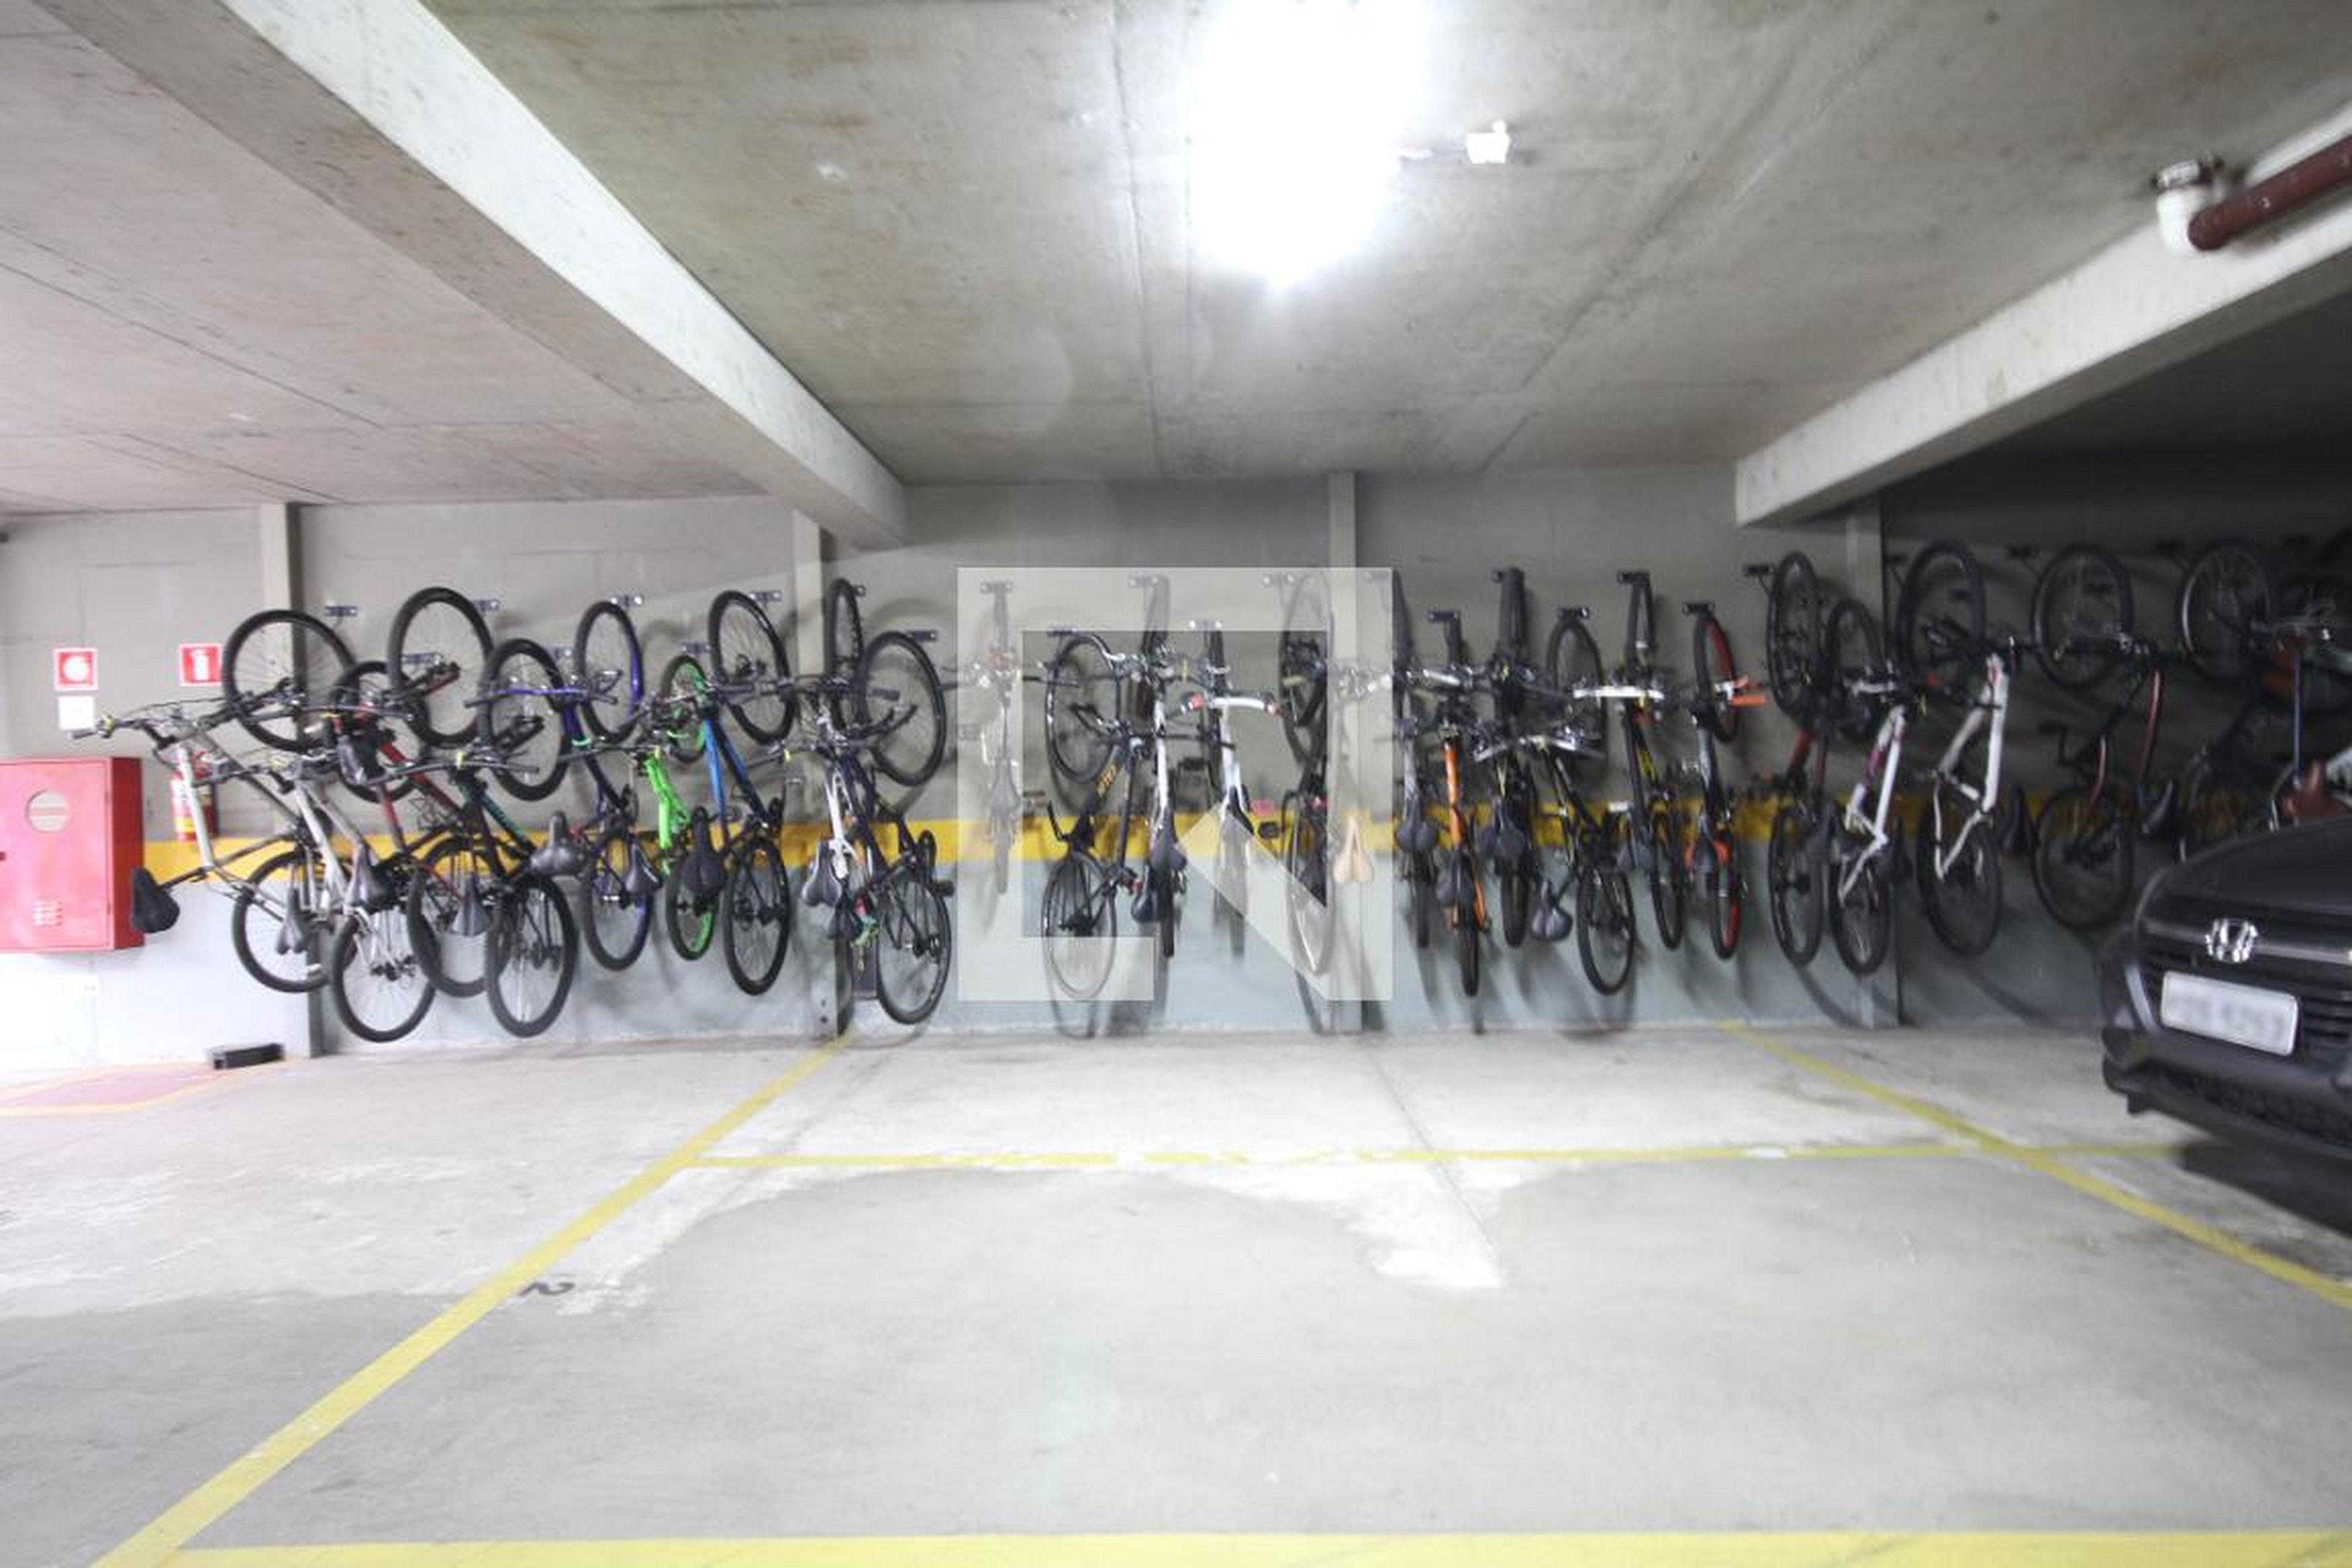 Bicicletario - Espaço Contemporâneo